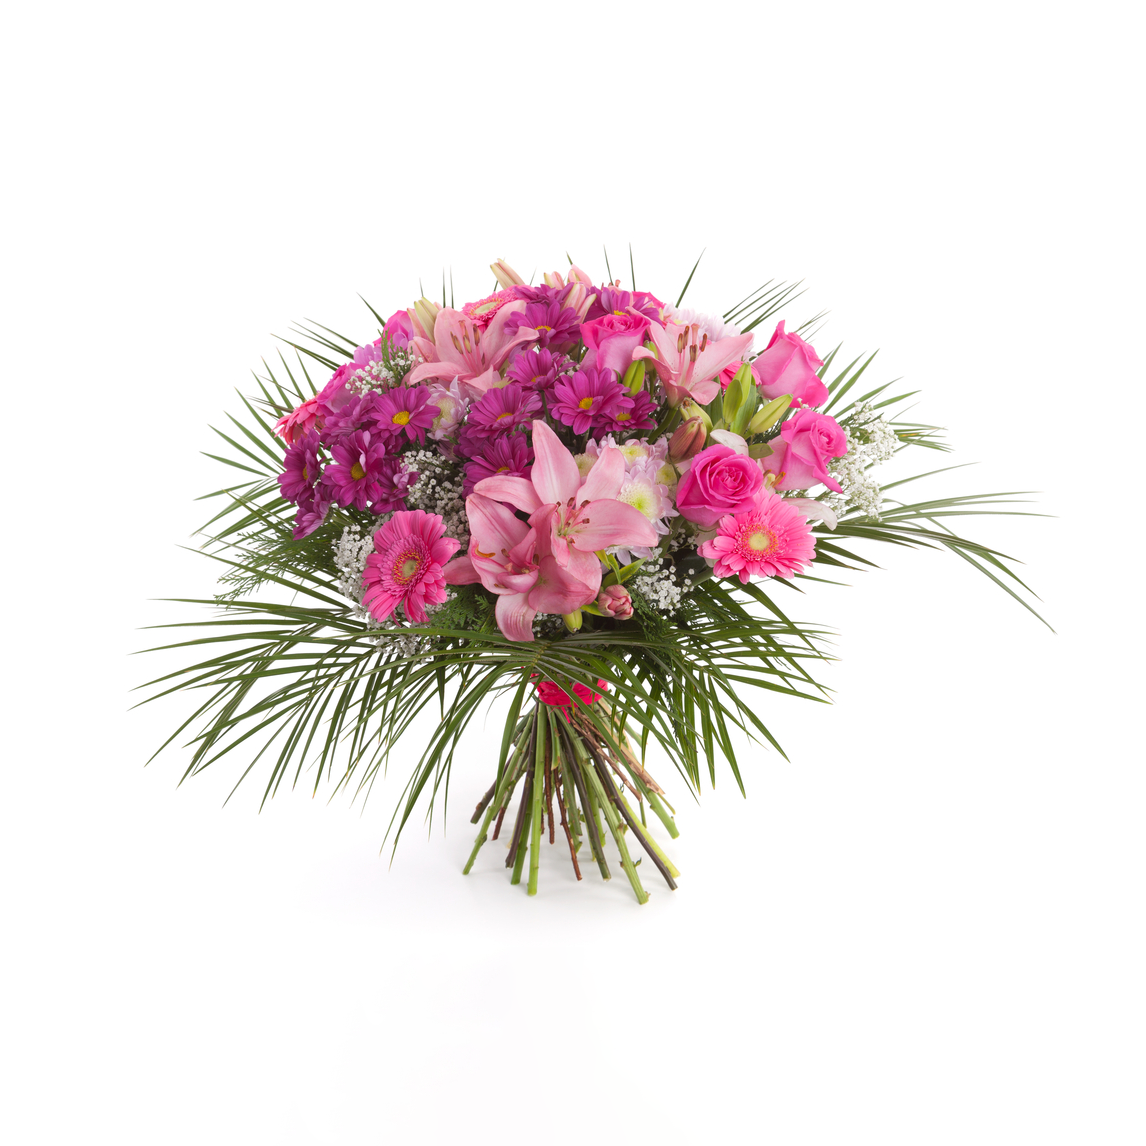 Florist Choice 6 - Floramor 